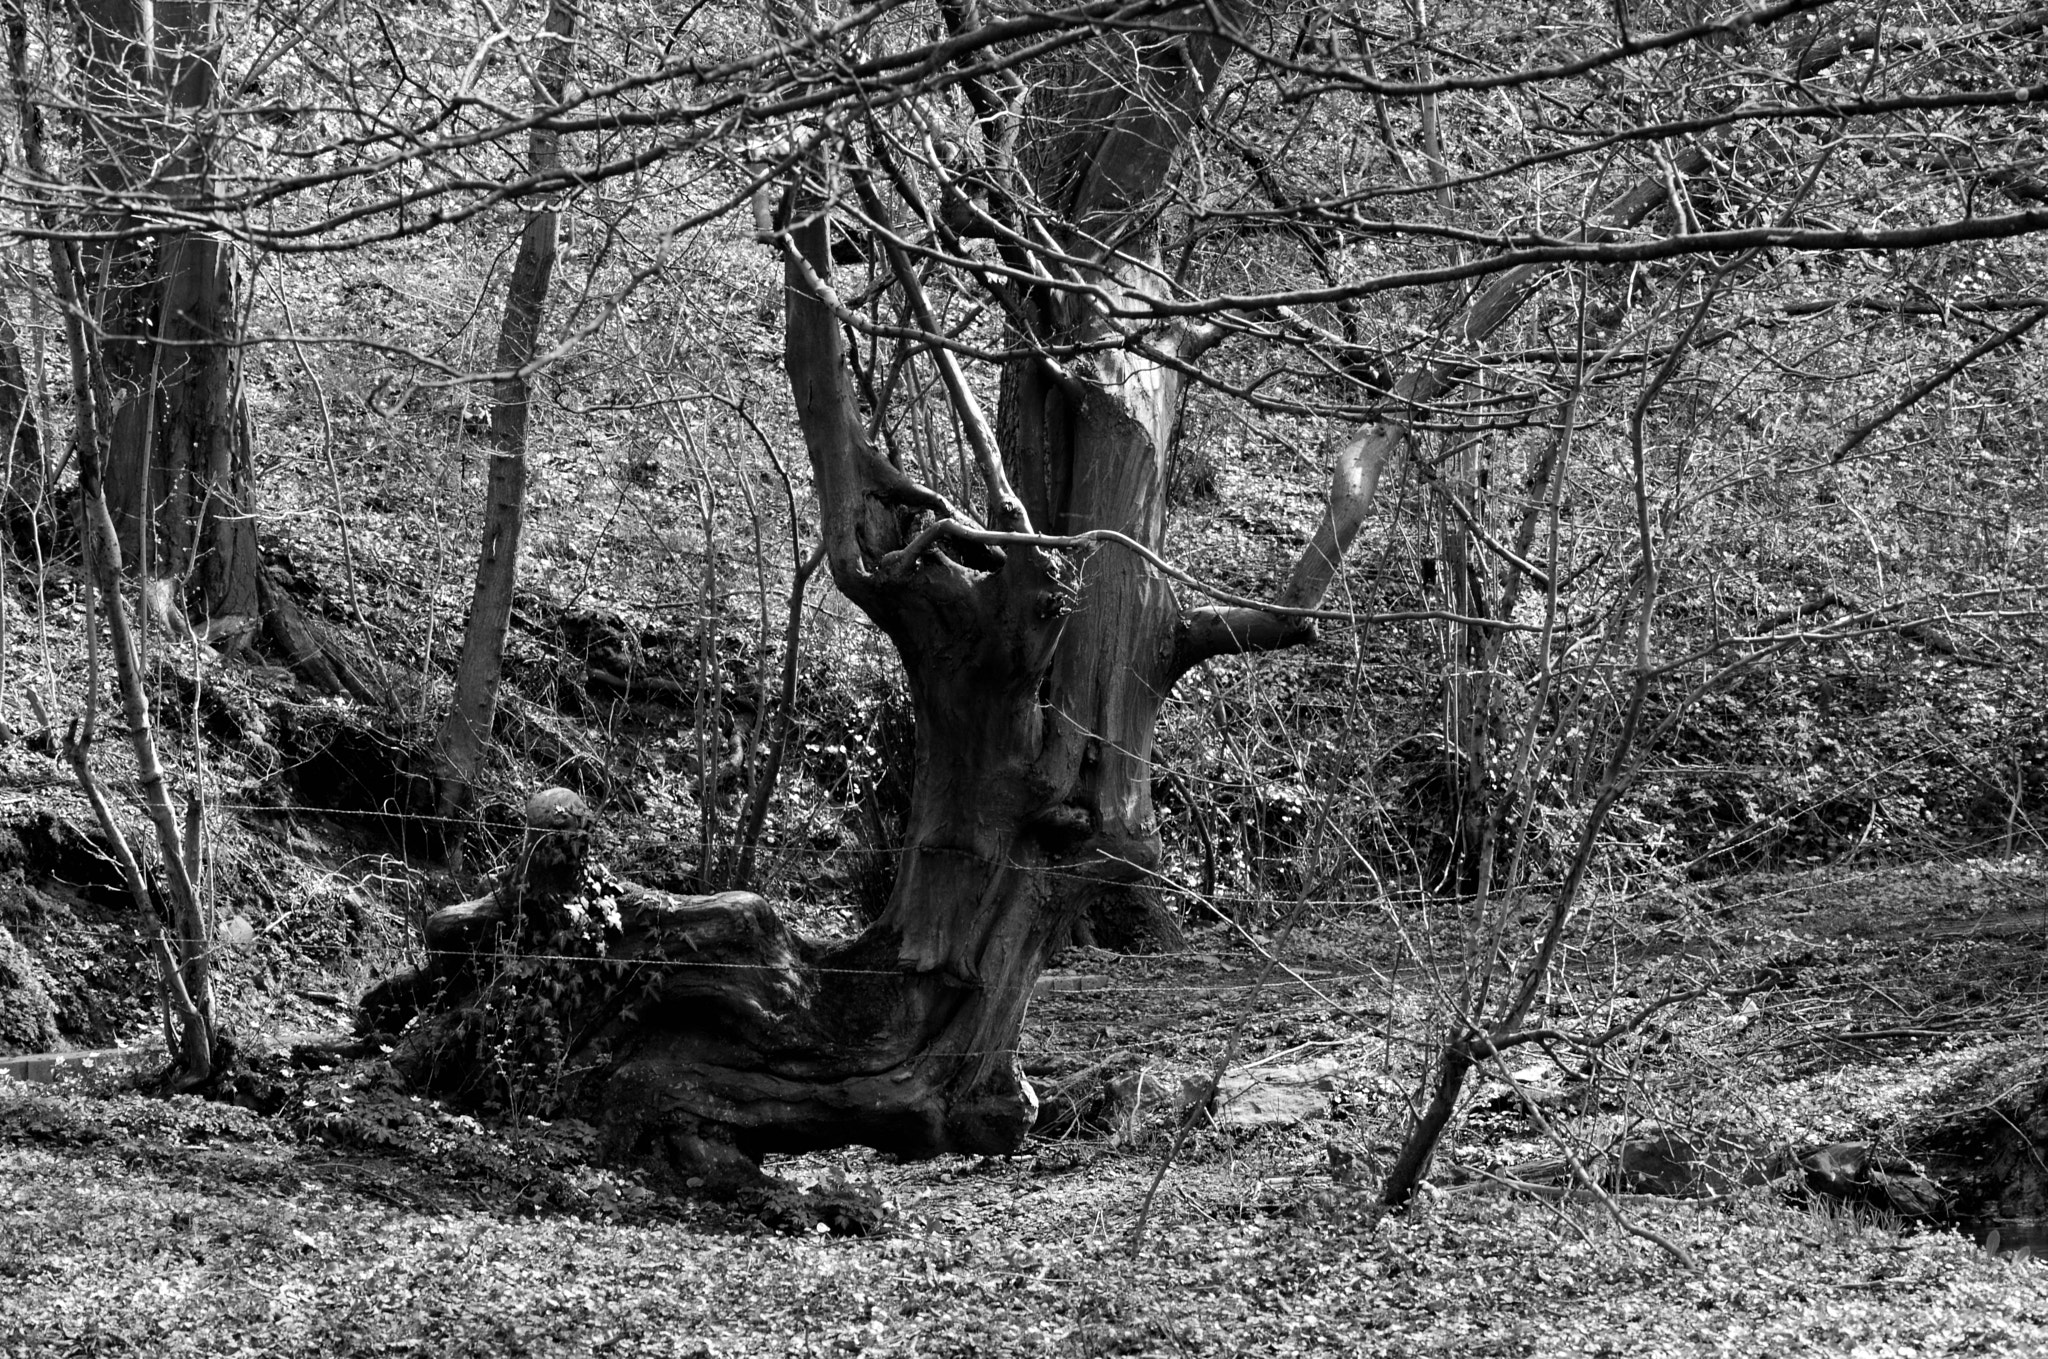 AF Zoom-Nikkor 75-240mm f/4.5-5.6D sample photo. My deer tree photography